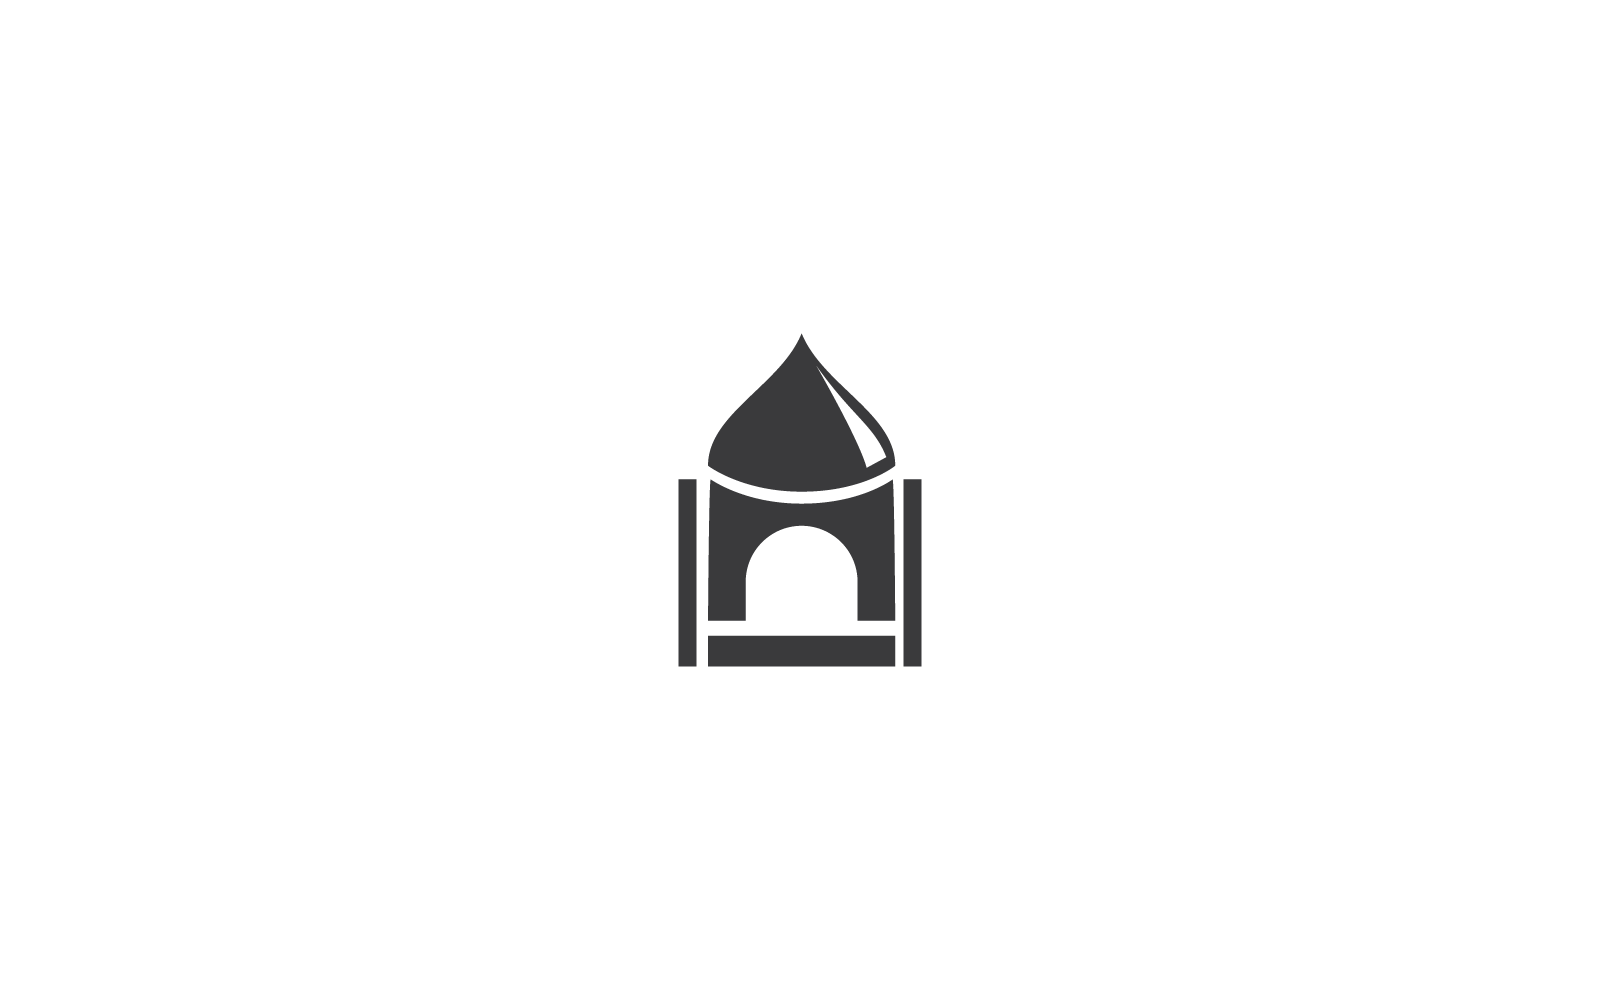 Islamic logo, Mosque icon design vector template